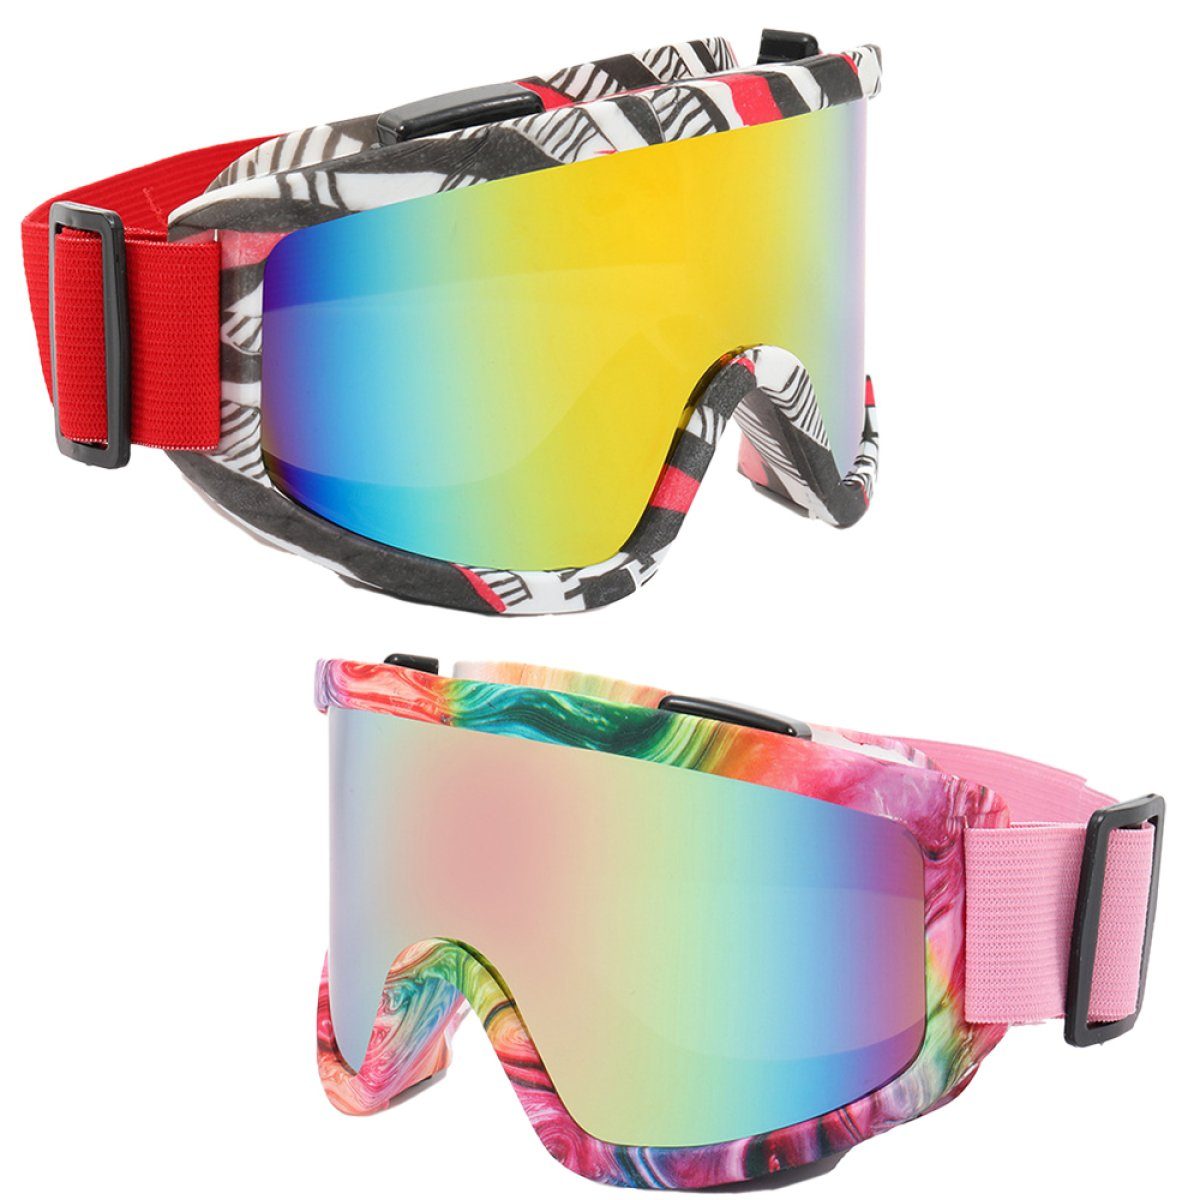 AugenschutzUV-Schutz brillenträger, Damen für Unisex skibrille Reduziert und das für Beschlagen, Multicolour3 ZmdecQna Herren,UV-Schutz Skibrille